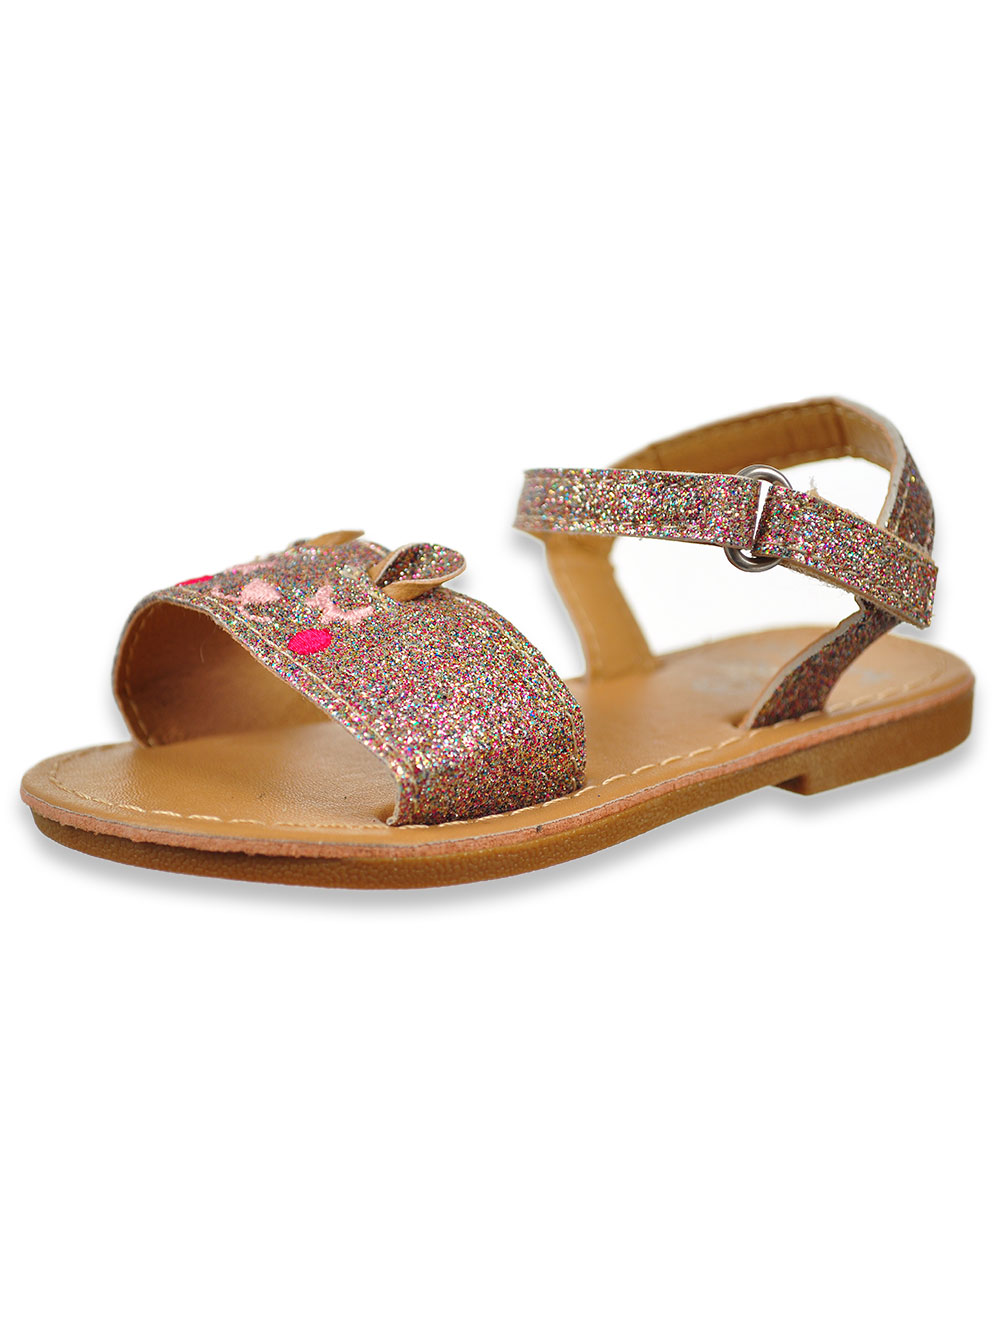 girls iridescent sandals